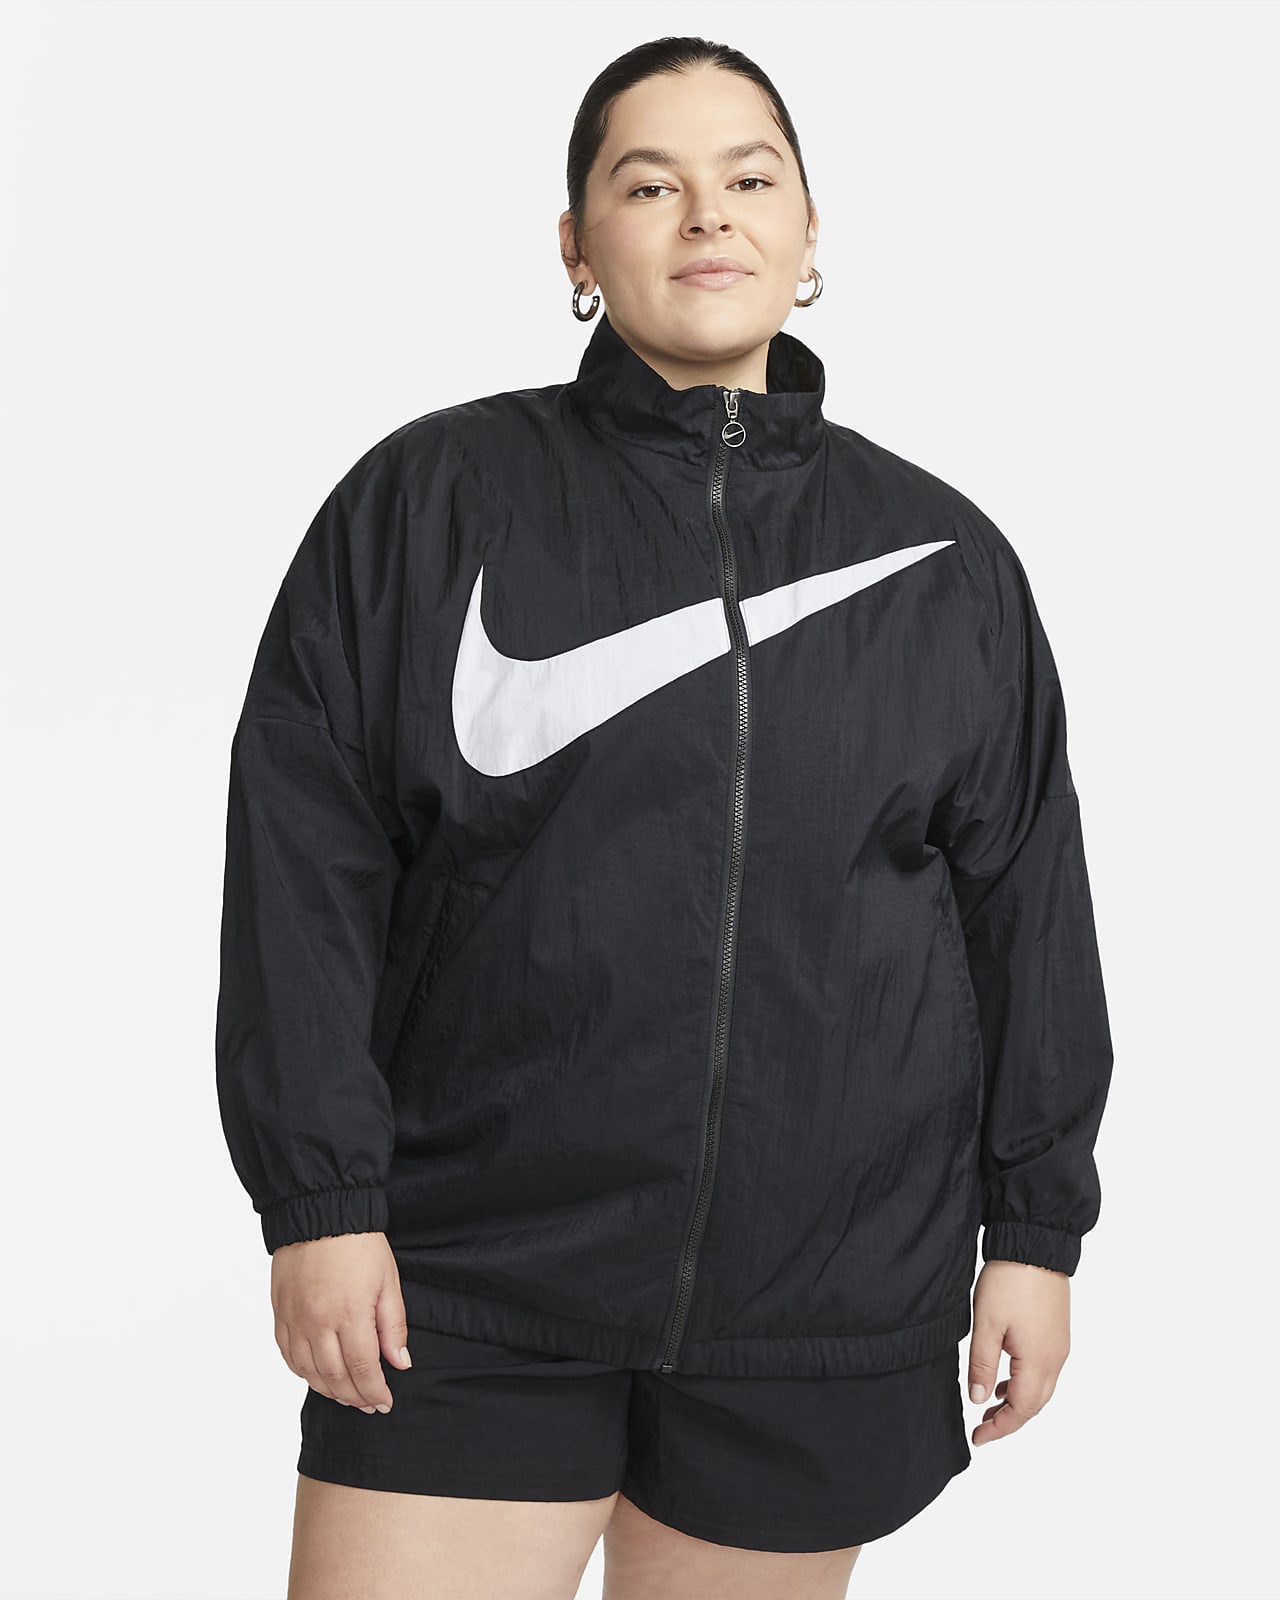 Nike Sportswear Women's Jacket (Plus Nike.com